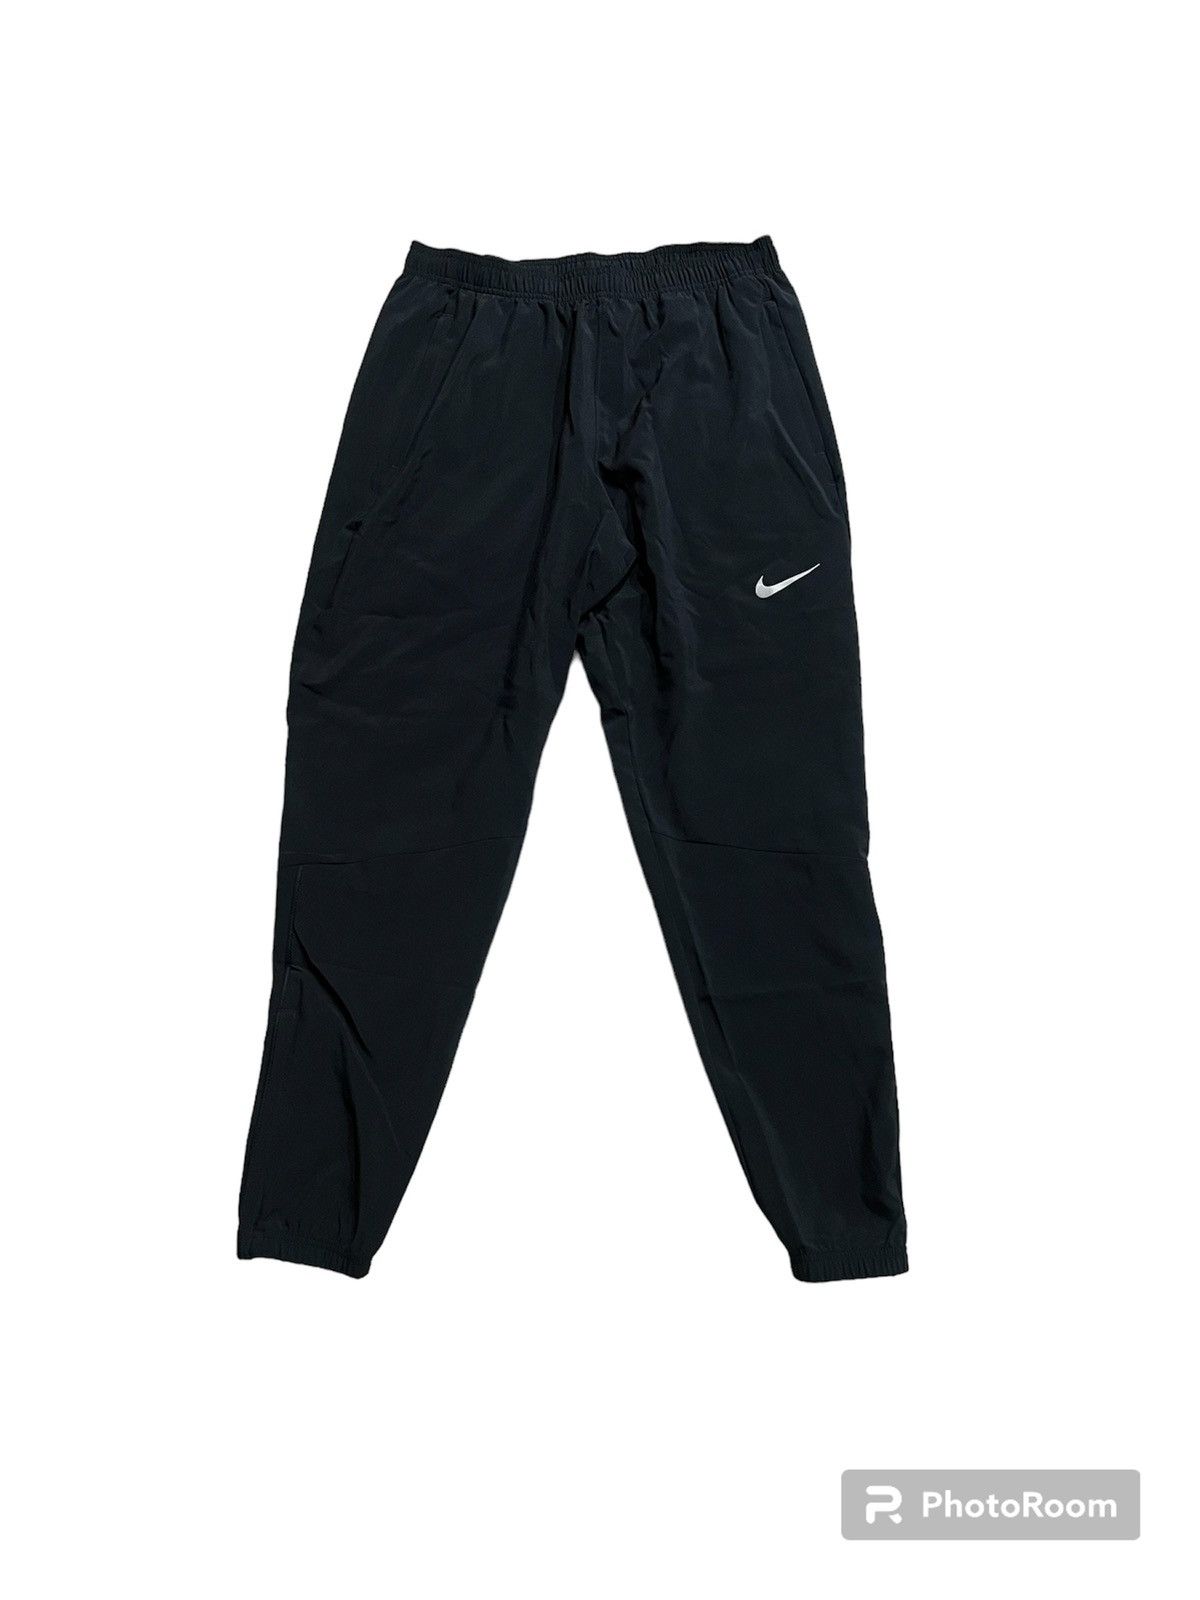 Nike Nike Sweatpants | Grailed